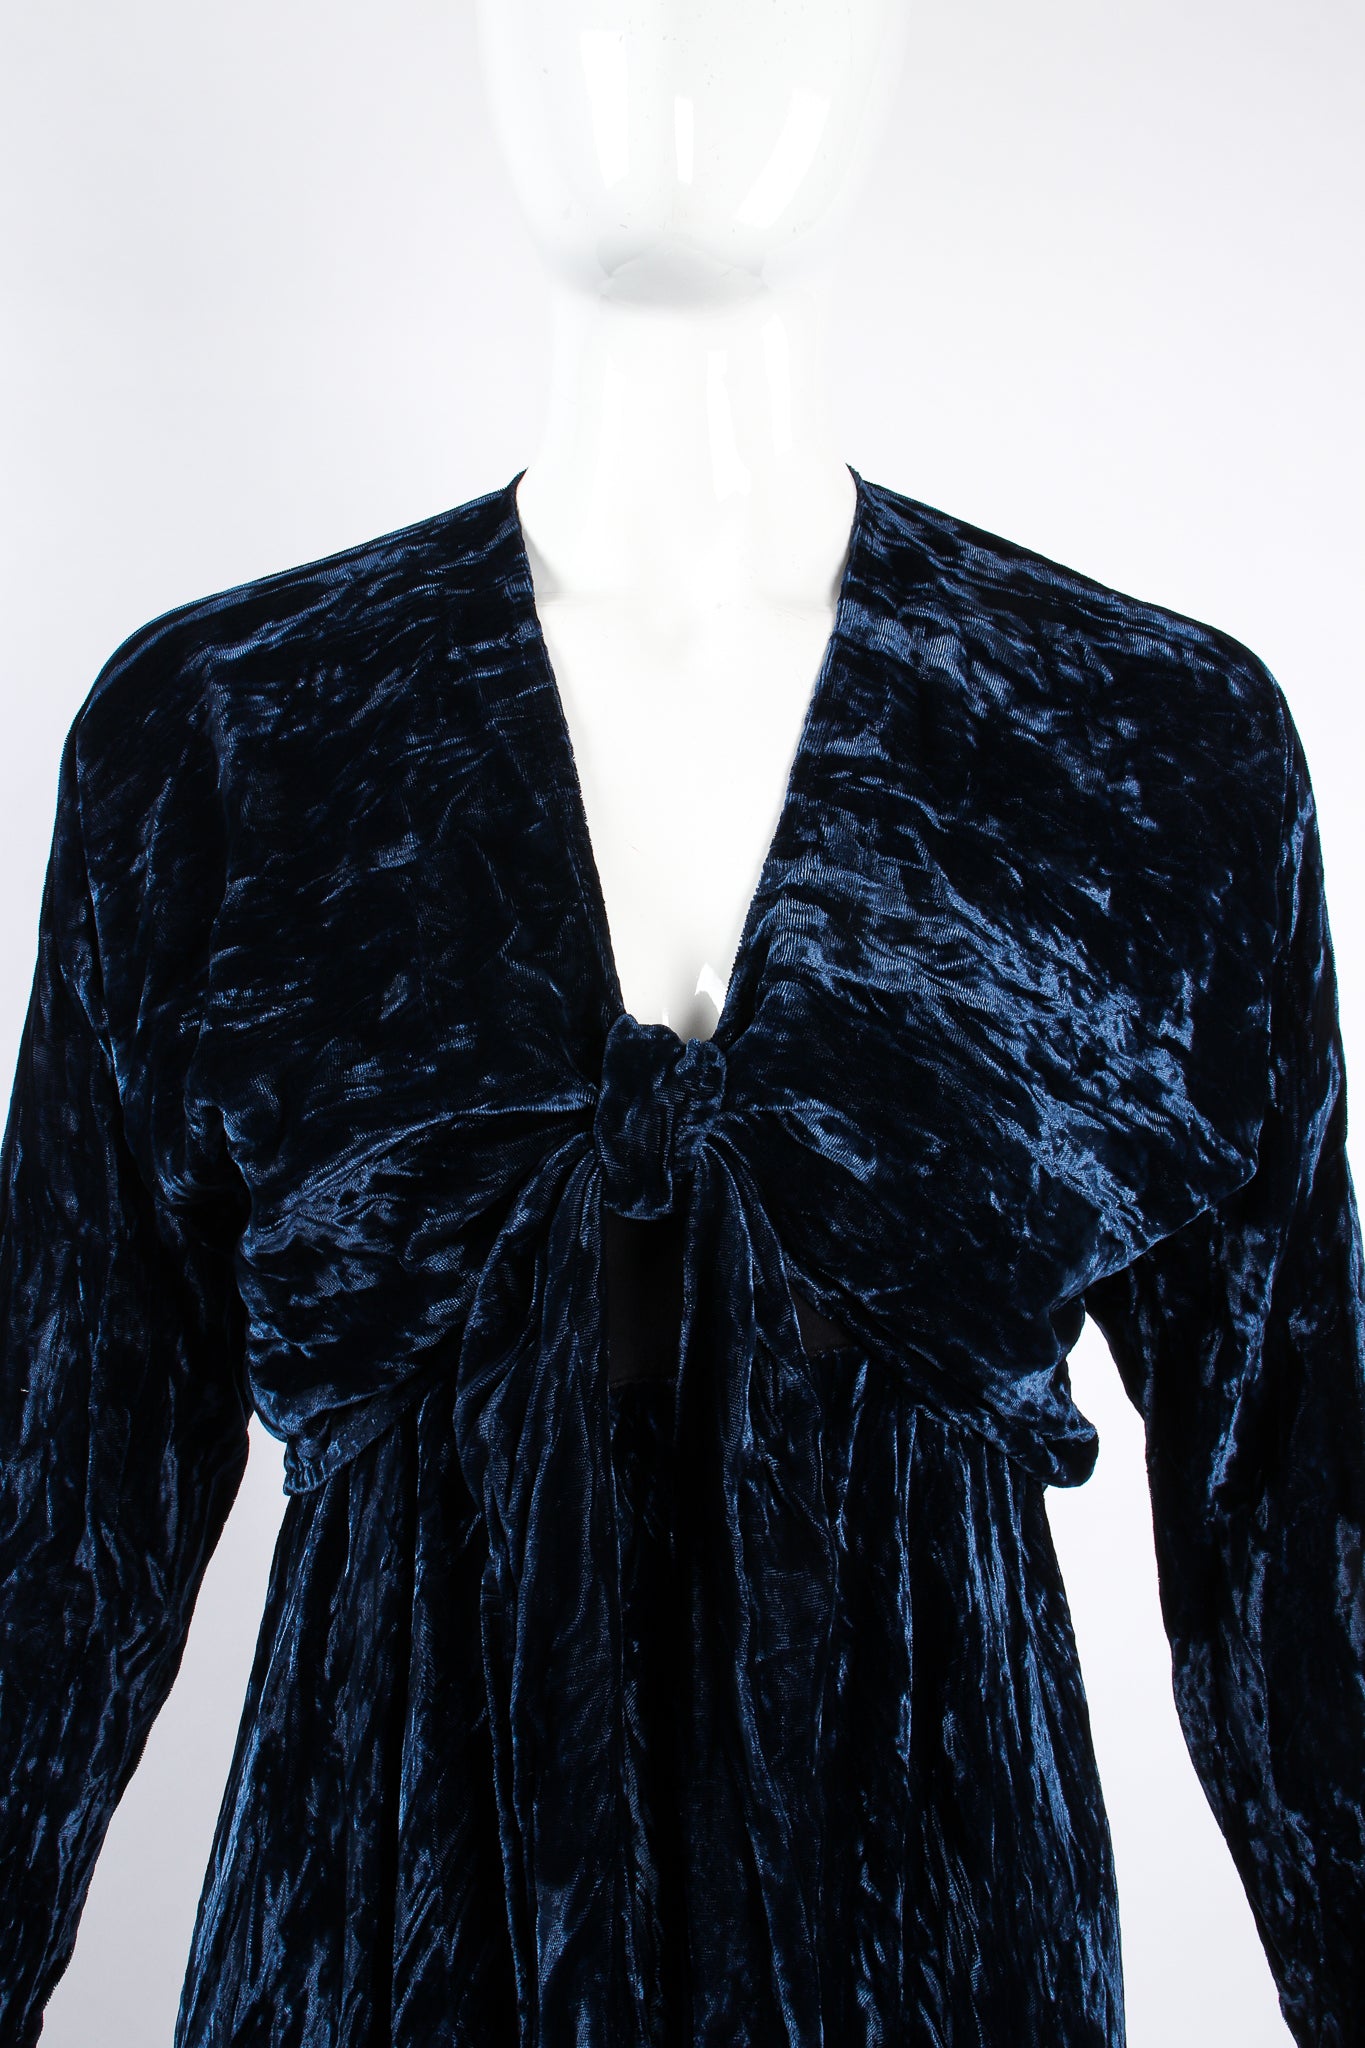 Vintage Morgane Le Fay Crushed Velvet Top & Dress Set on Mannequin frt crop at Recess Los Angeles